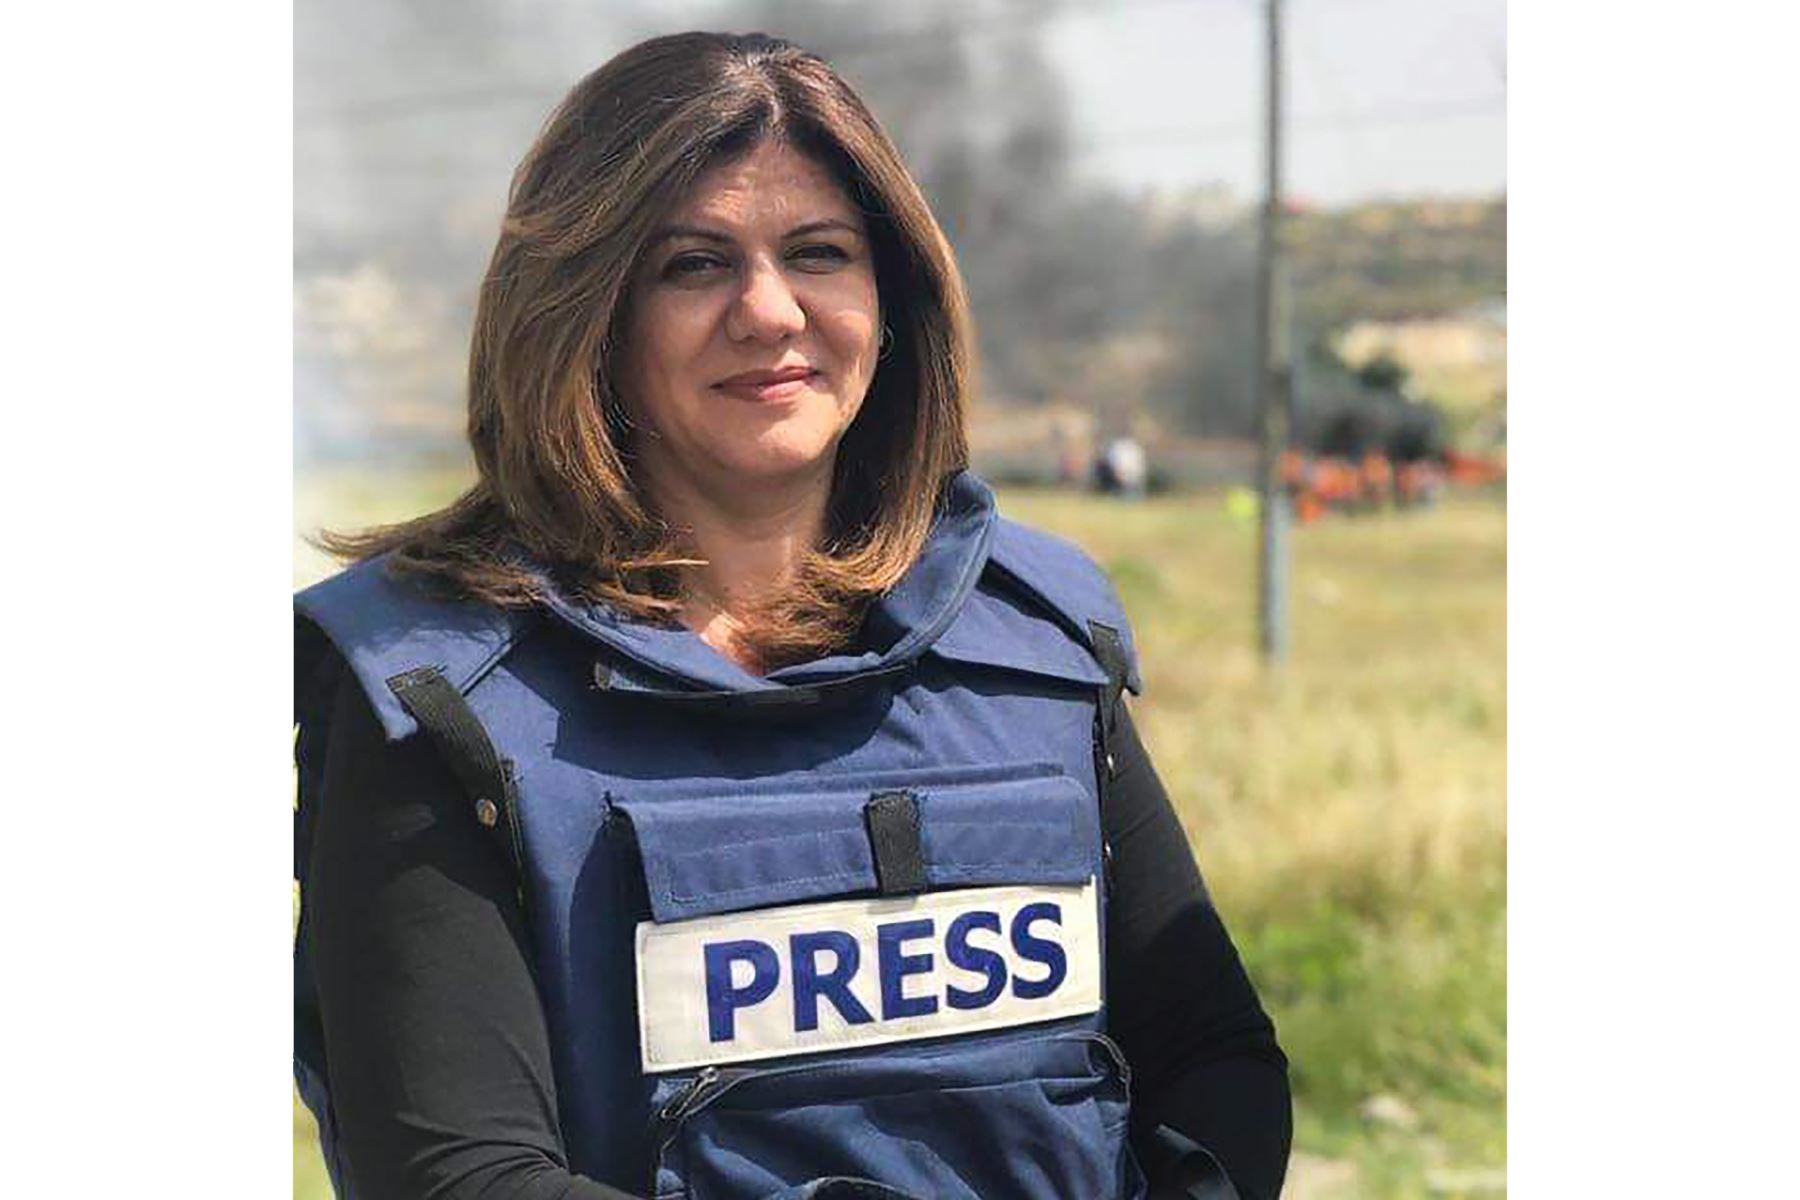 A los ojos de su colega Mohamad Daraghmeh, también un amigo cercano, representaba "una de las periodistas más fuertes del mundo árabe". Foto: EFE